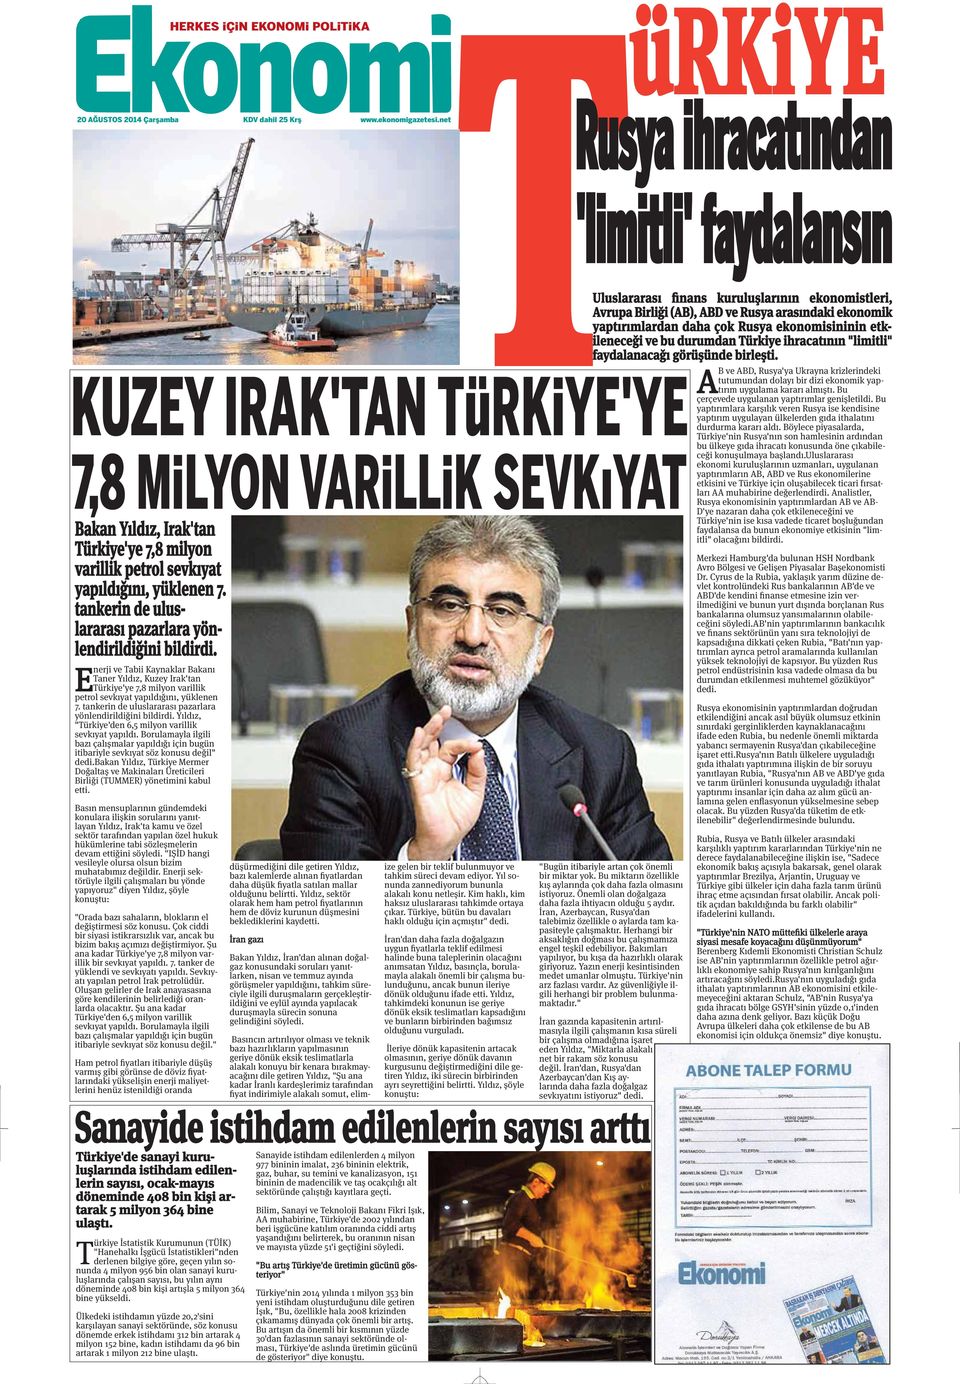 tankerin de uluslararası pazarlara yönlendirildiğini bildirdi. Yıldız, "Türkiye'den 6,5 milyon varillik sevkıyat yapıldı.